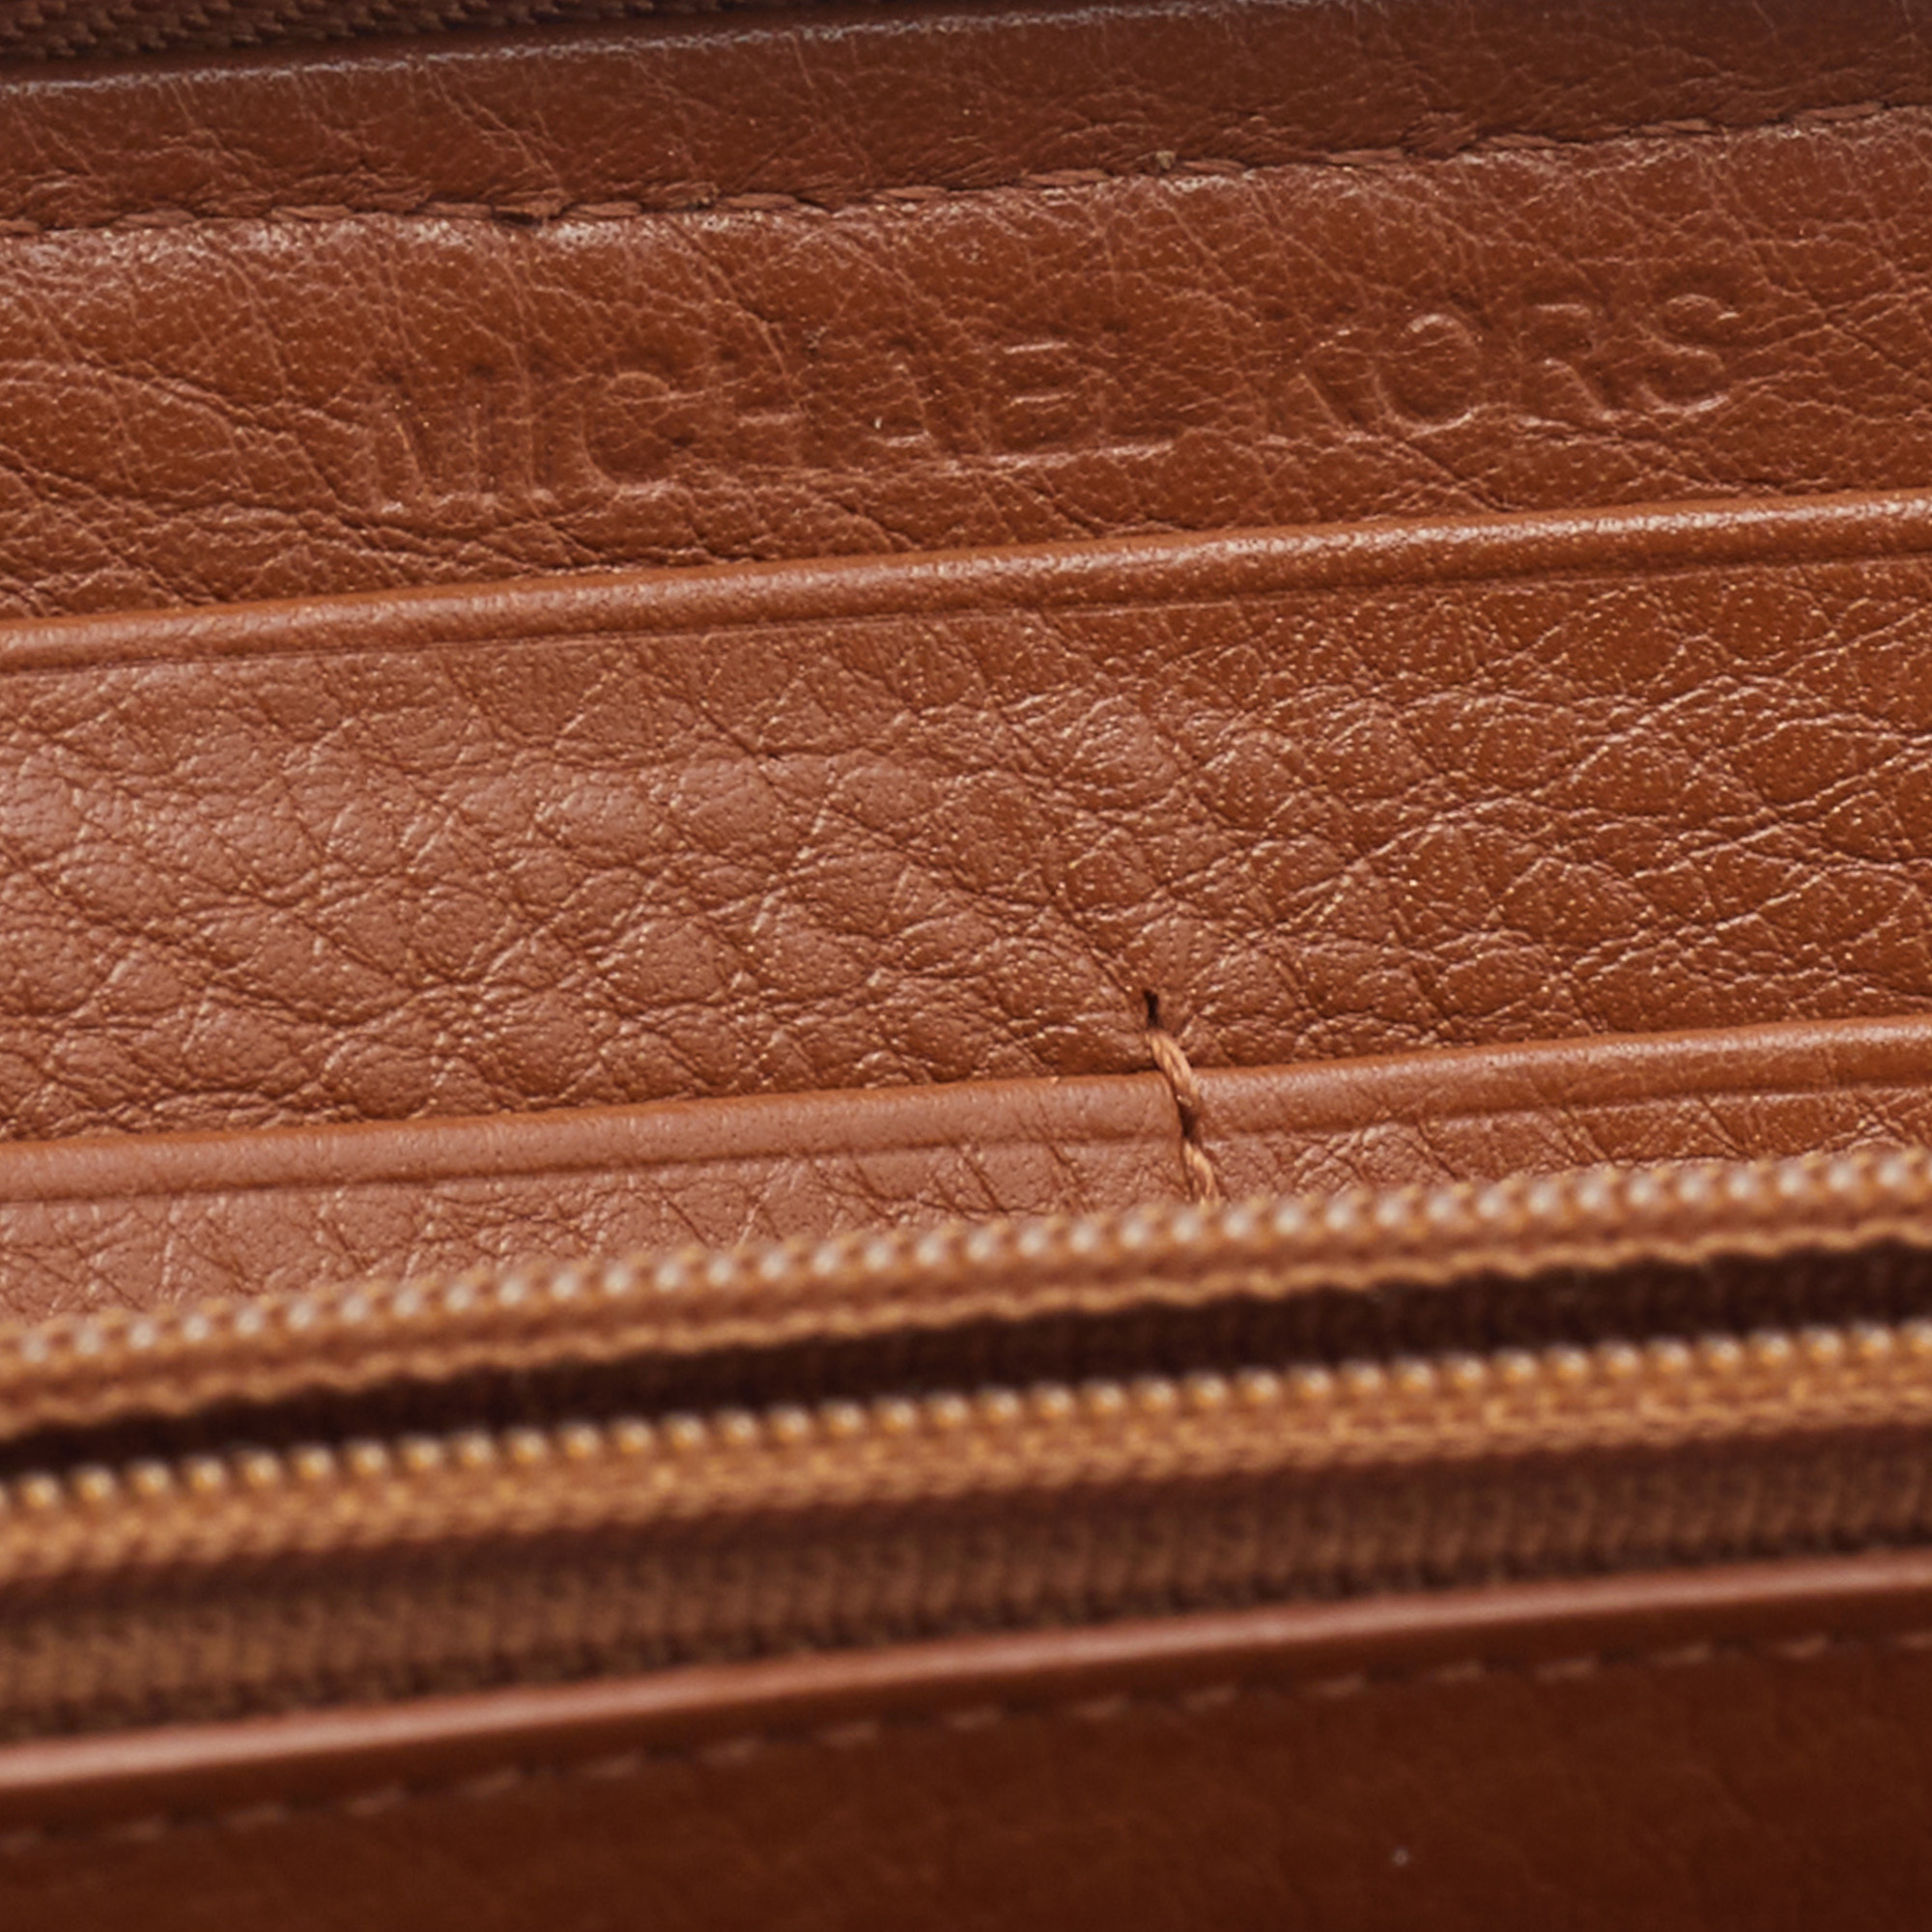 Michael Kors Tan Leather Woven Zip Around Wallet